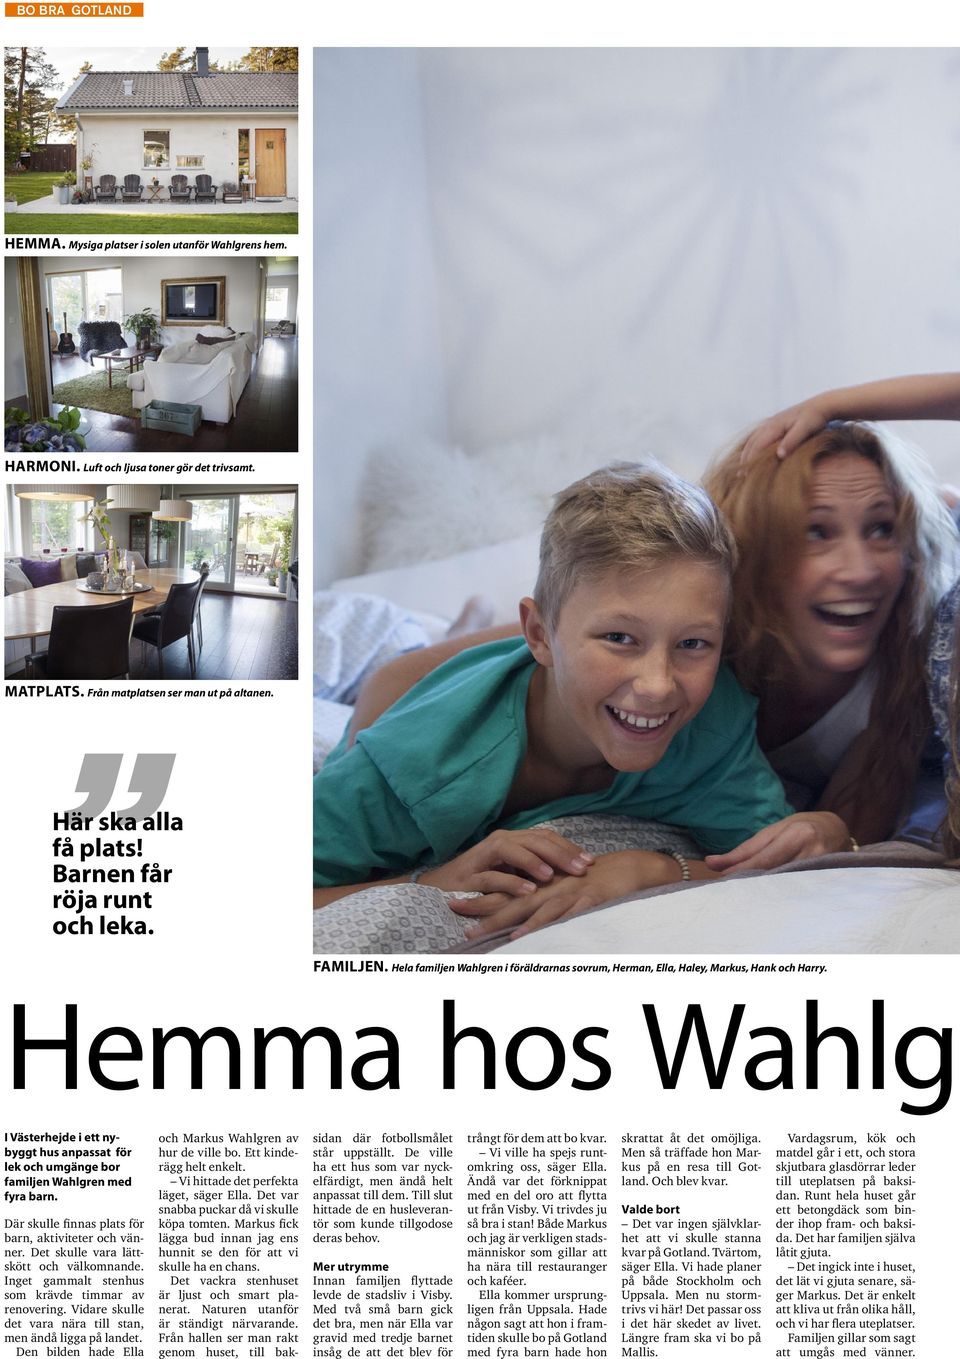 Hemma hos Wahlg I Västerhejde i ett nybyggt hus anpassat för lek och umgänge bor familjen Wahlgren med fyra barn. Där skulle finnas plats för barn, aktiviteter och vänner.